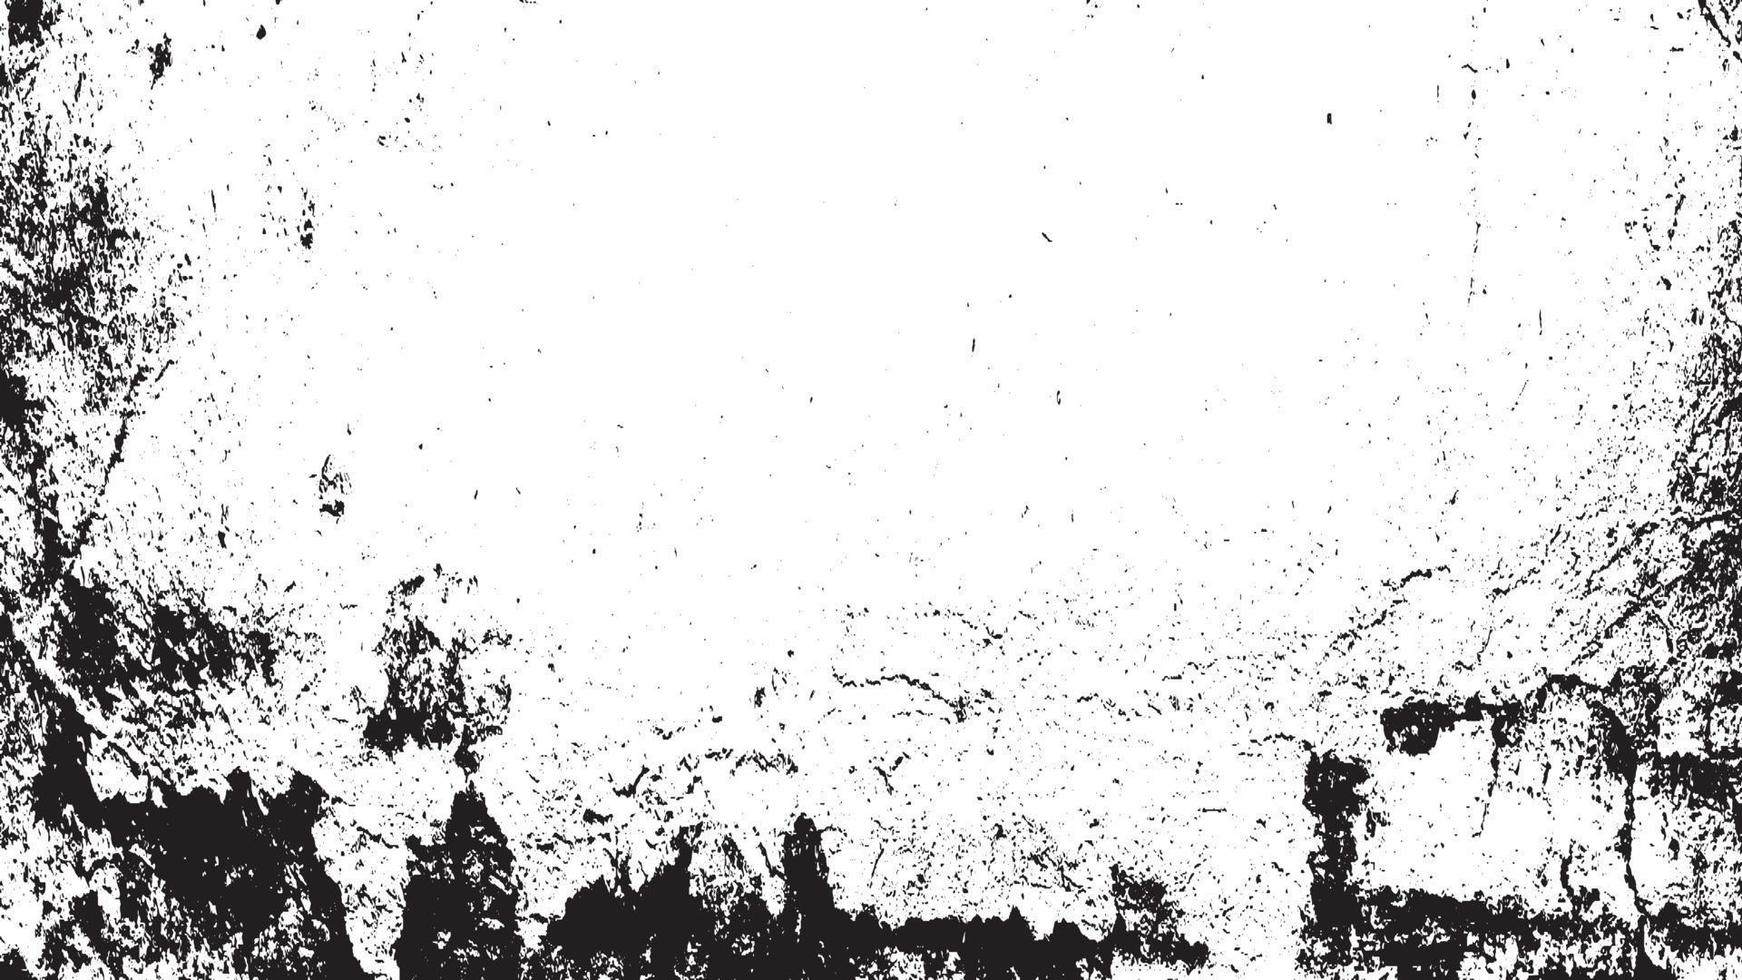 grunge textuur effect. verontruste overlay ruwe textuur. abstracte vintage zwart-wit. zwart geïsoleerd op een witte achtergrond. grafisch ontwerpelement halftoonstijlconcept voor banner, flyer, poster, enz vector